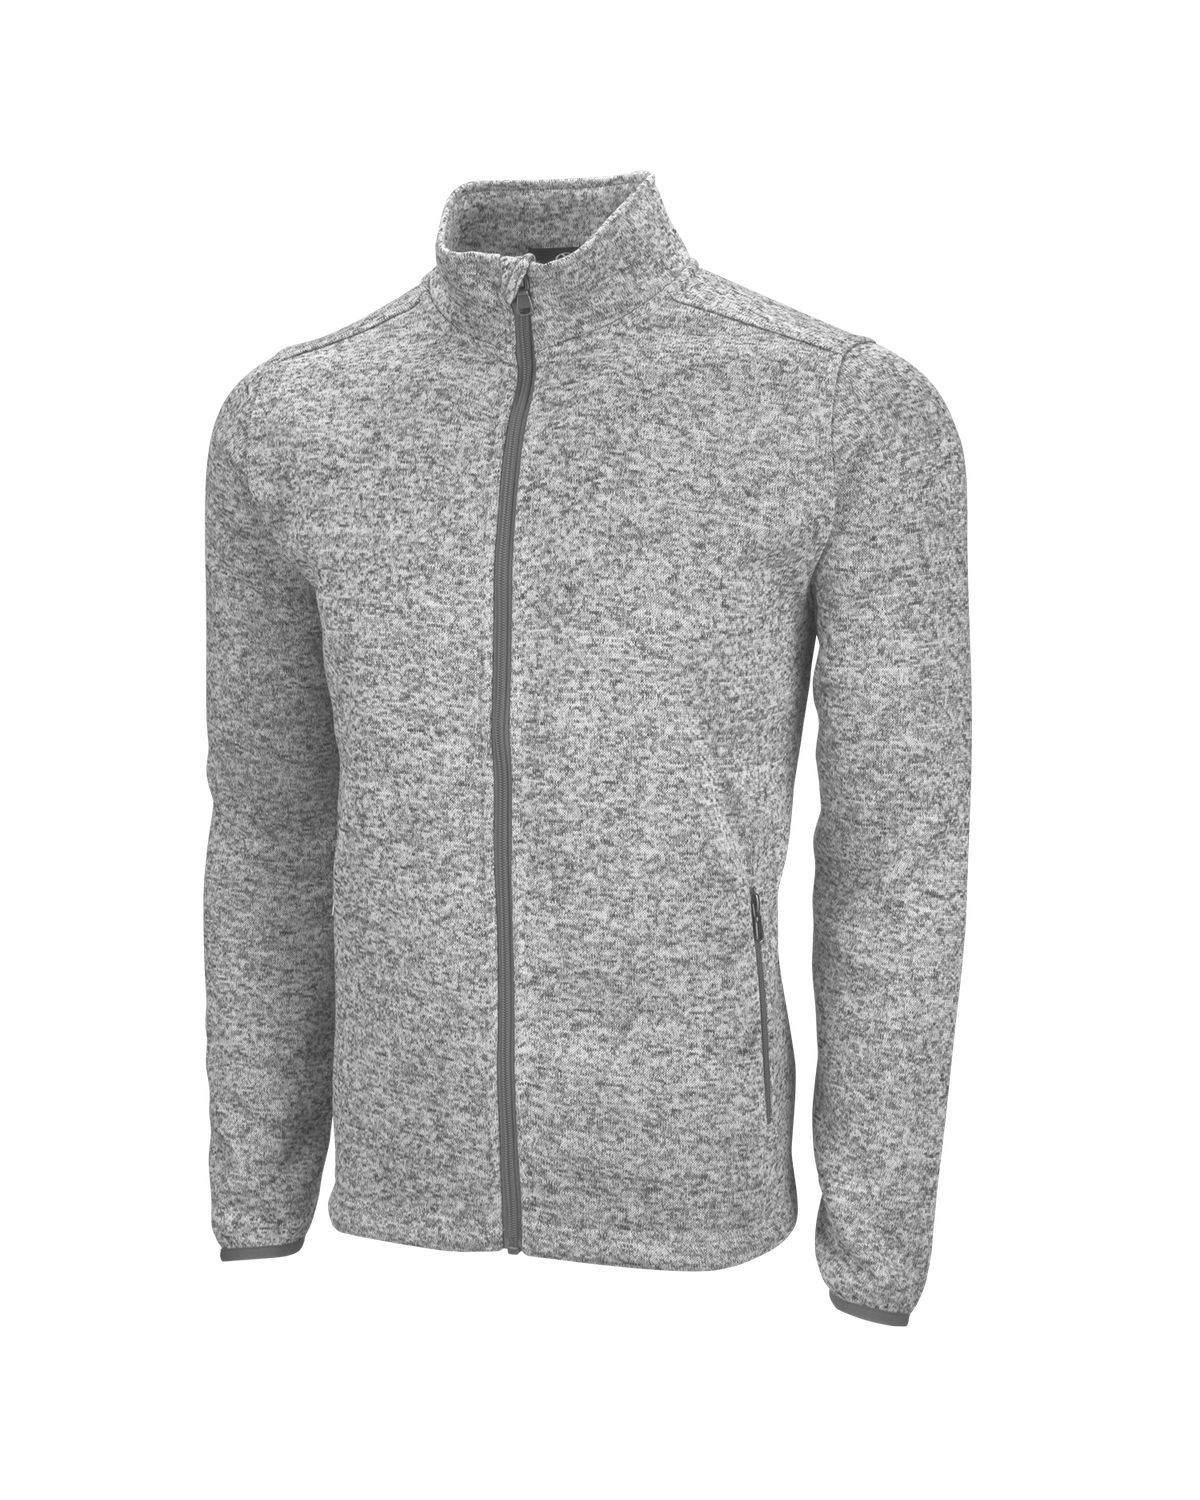 'Vantage 3305 Summit Sweater-Fleece Jacket'